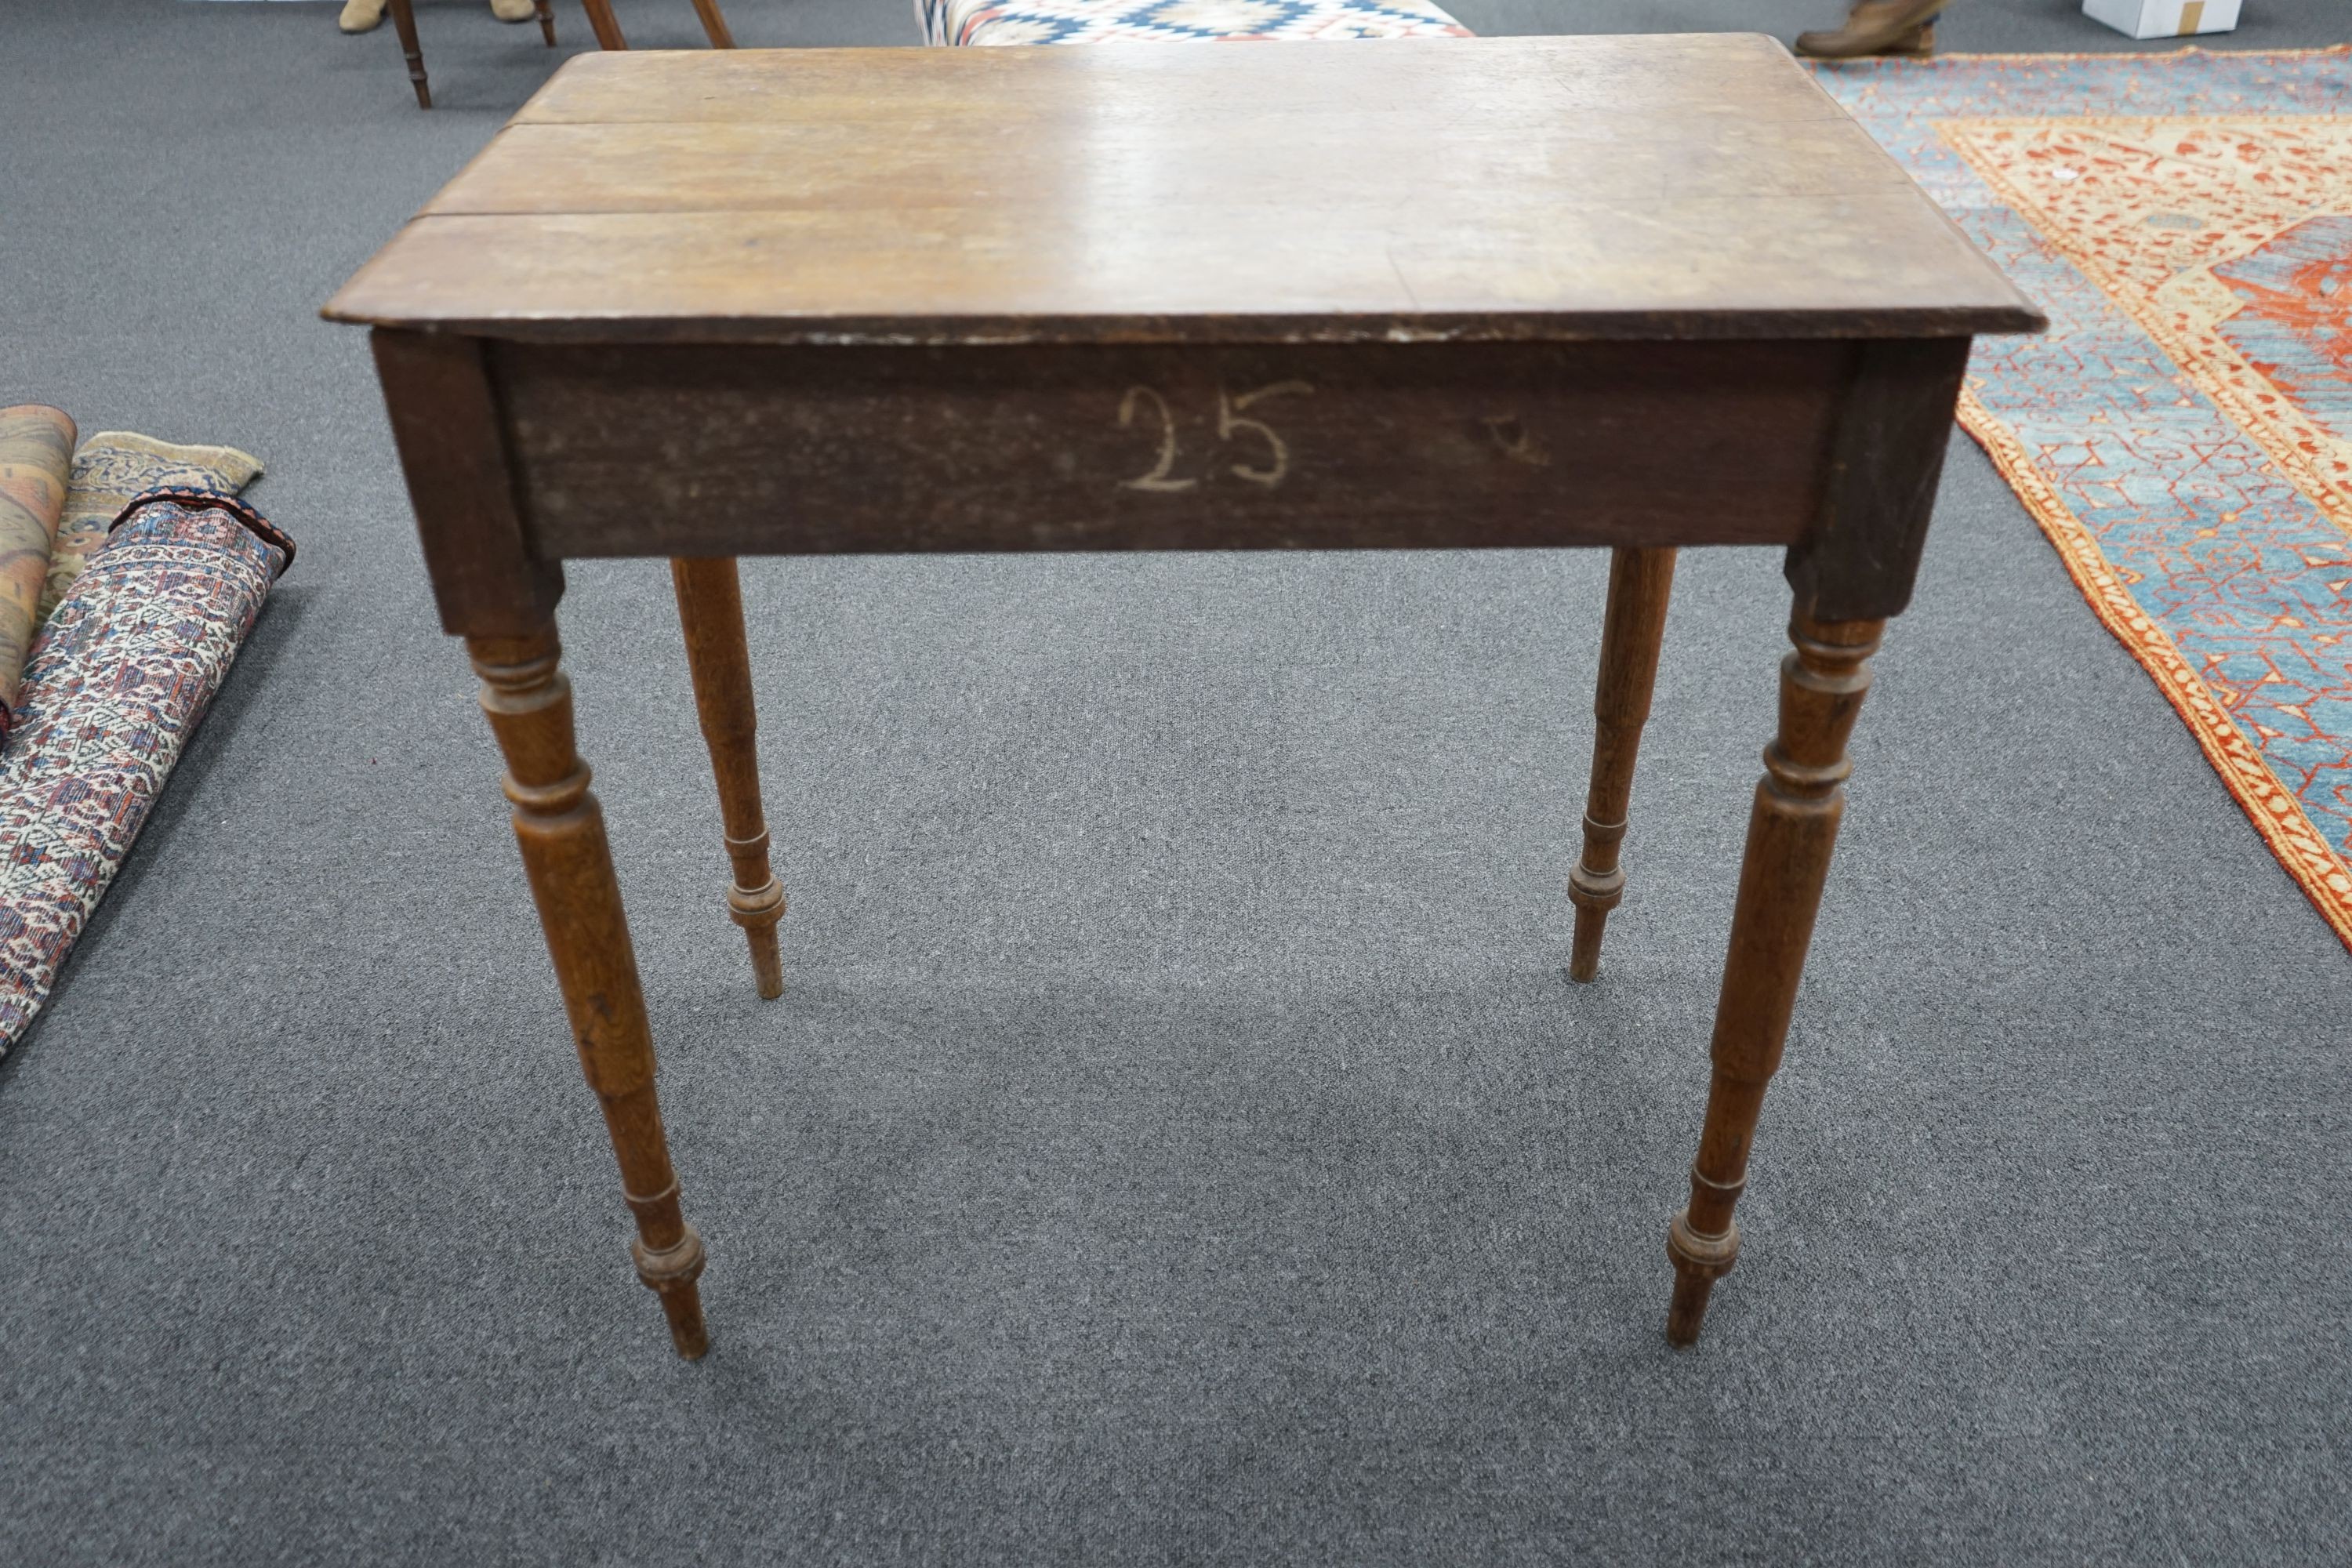 A Victorian oak side table, width 81cm, depth 50cm, height 69cm